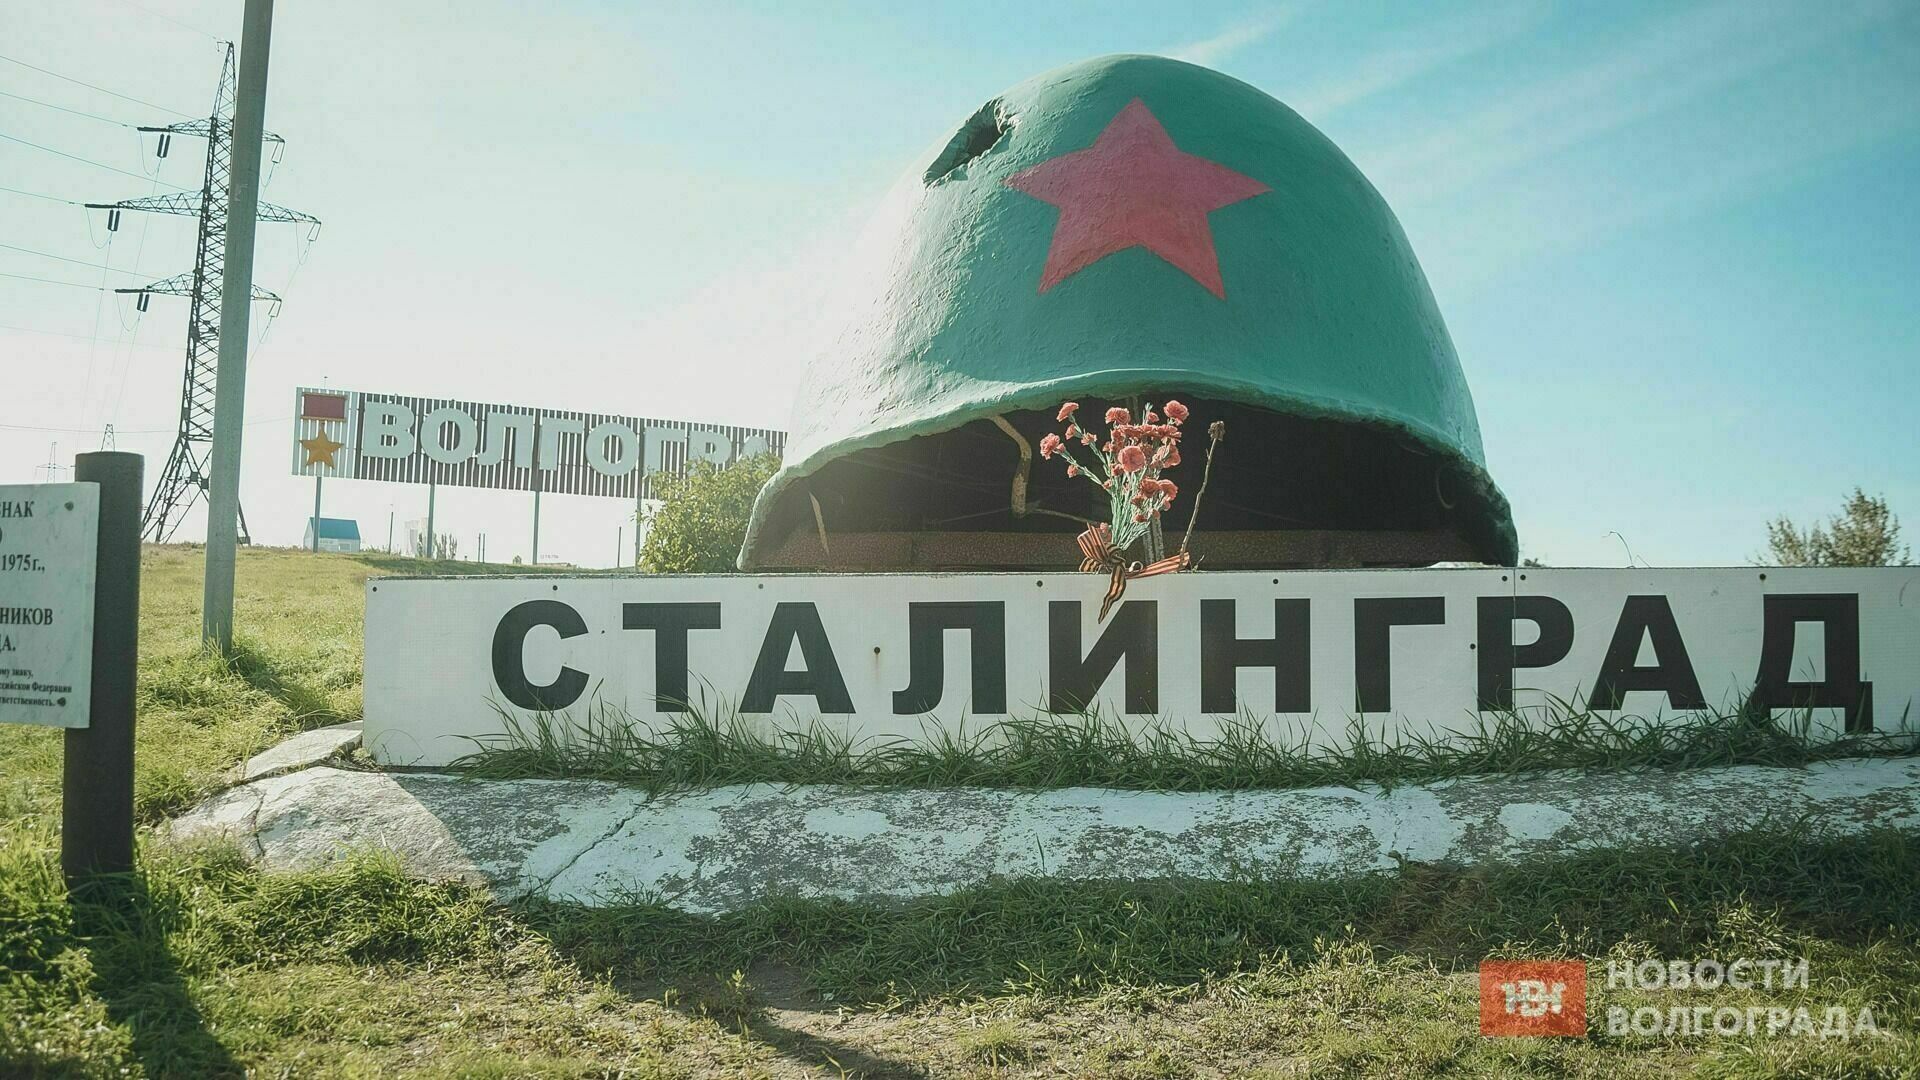 Очередной опрос показал, что большинство горожан против переименования Волгограда в Сталинград.